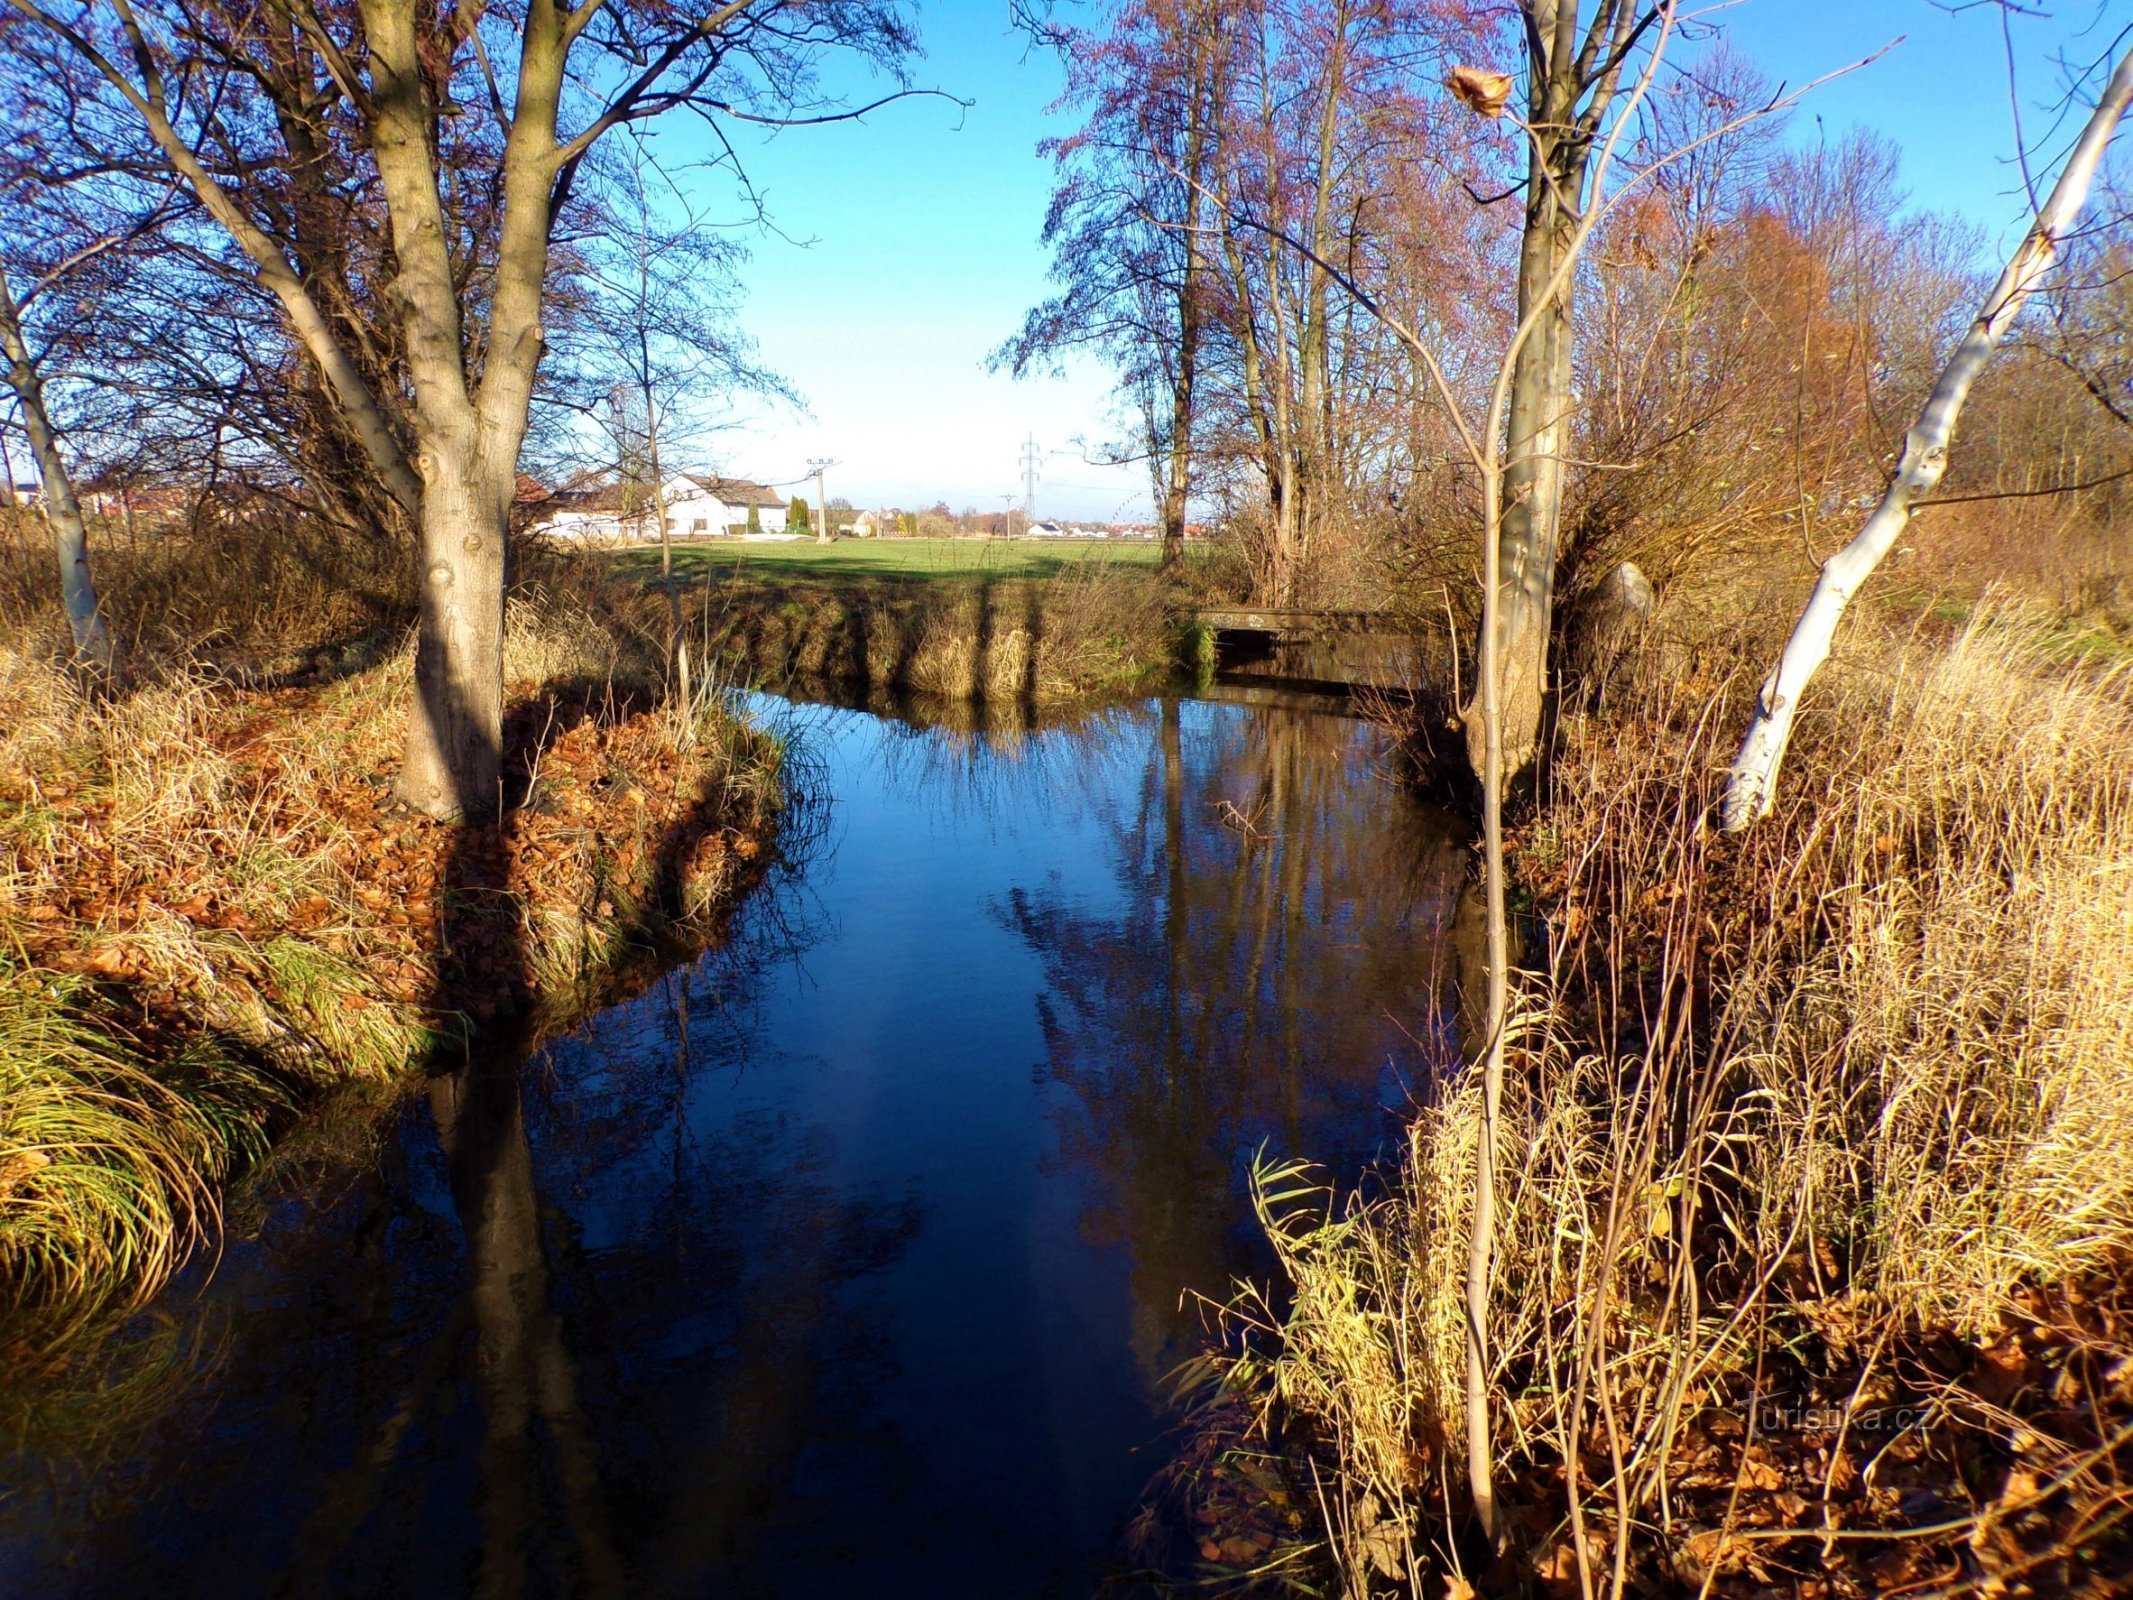 La confluence de Melounka et Malé Labské nahon (Hradec Králové, 3.12.2021 décembre XNUMX)